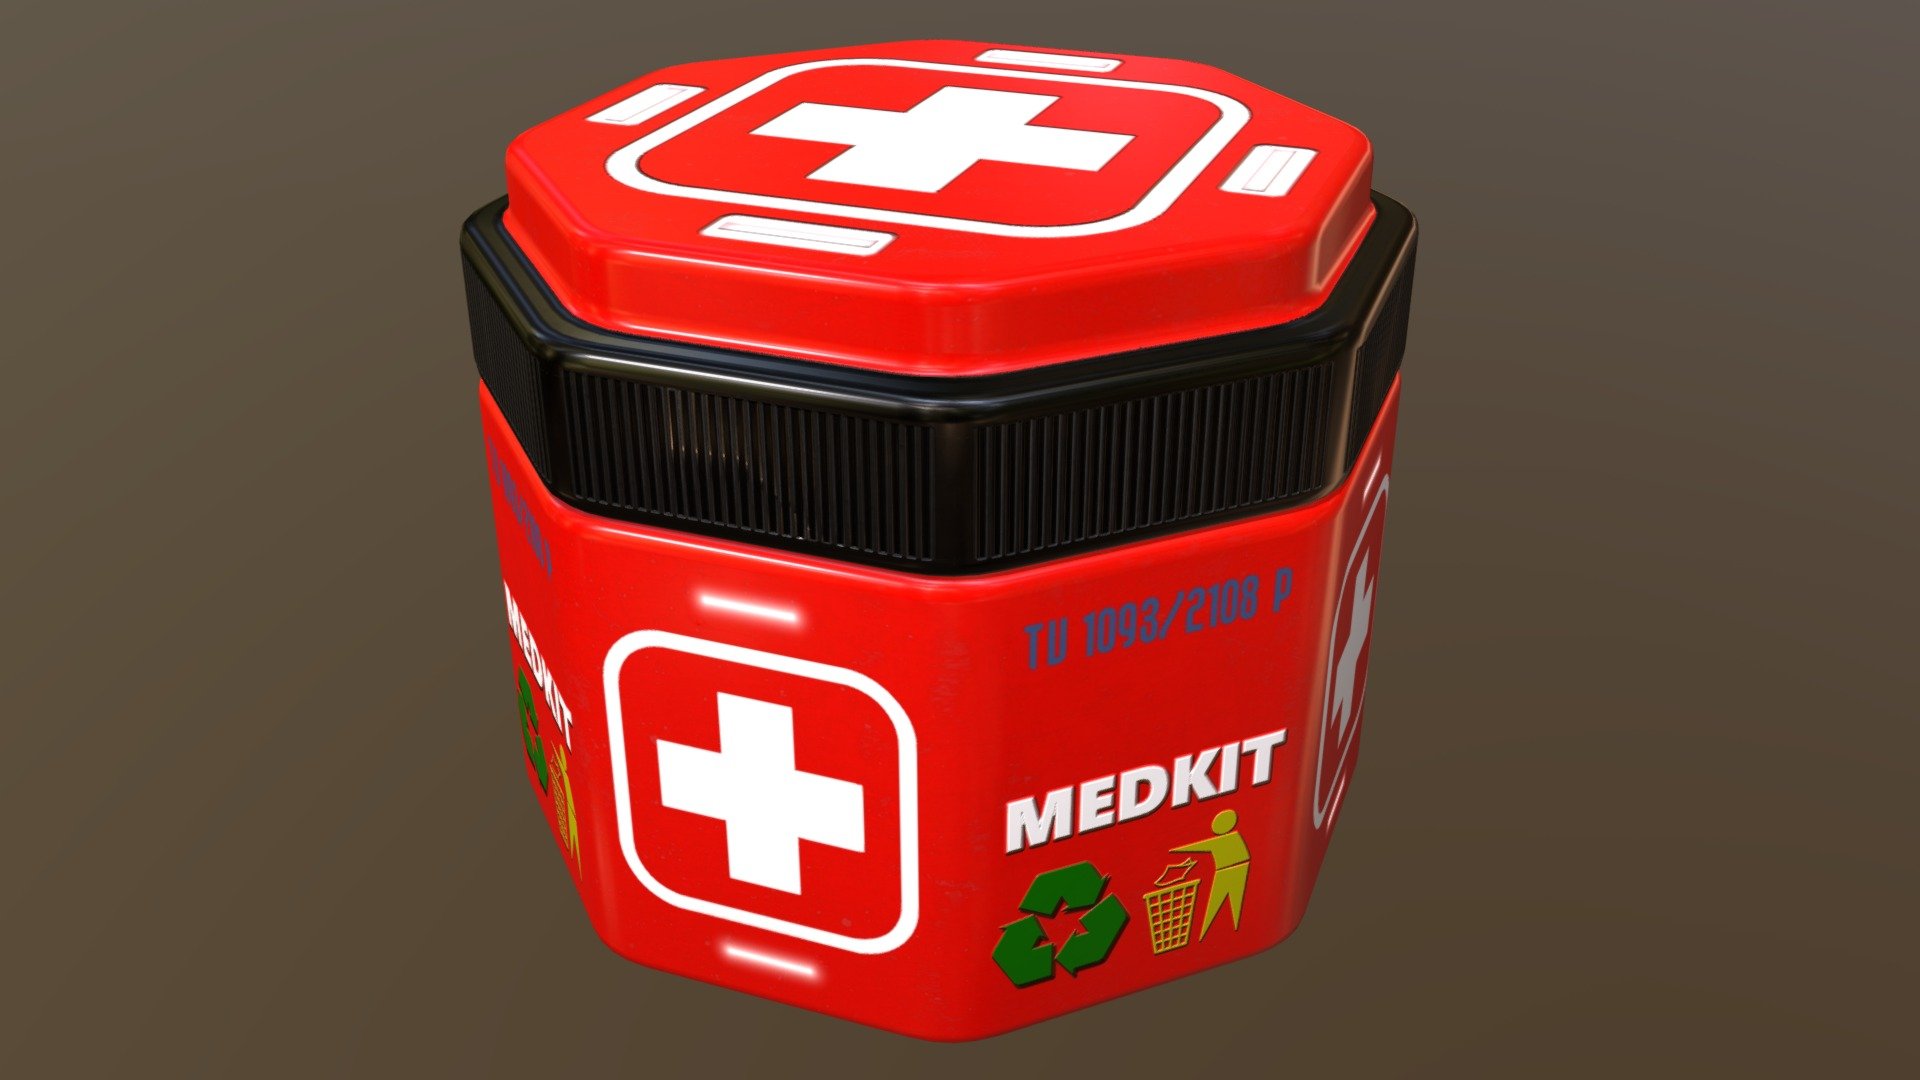 Medkit Box 2